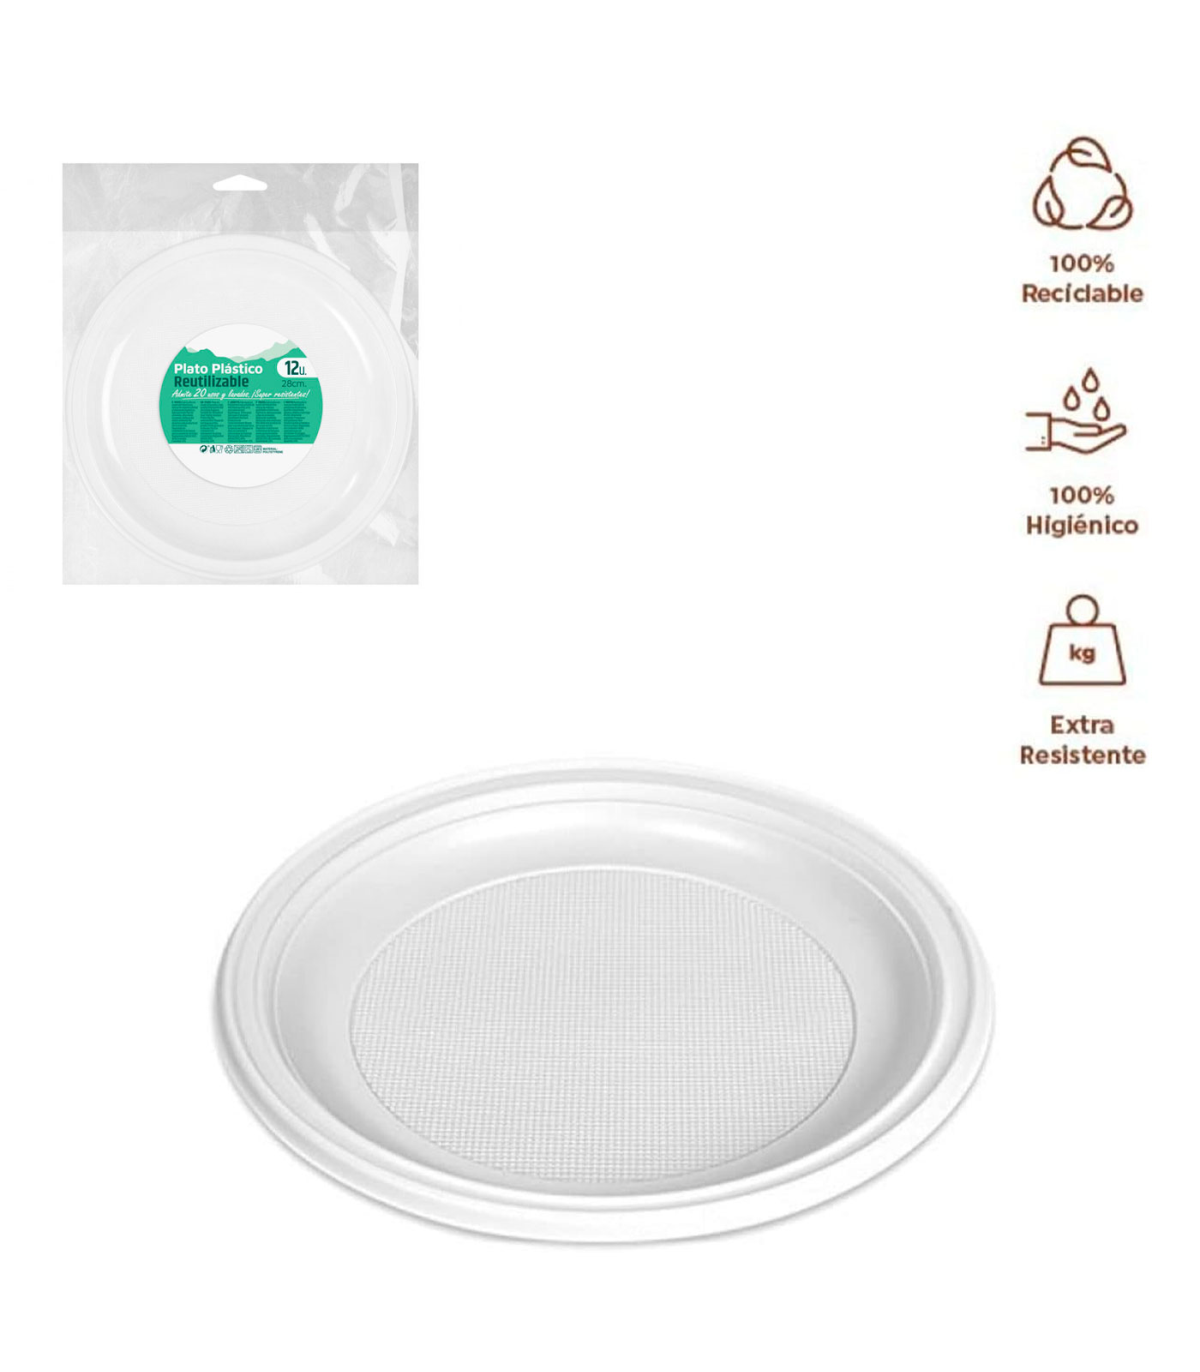 Tradineur - Pack de 12 platos llanos redondos reutilizables de plástico,  100% reciclables, extra resistentes, higiénicos, apilab